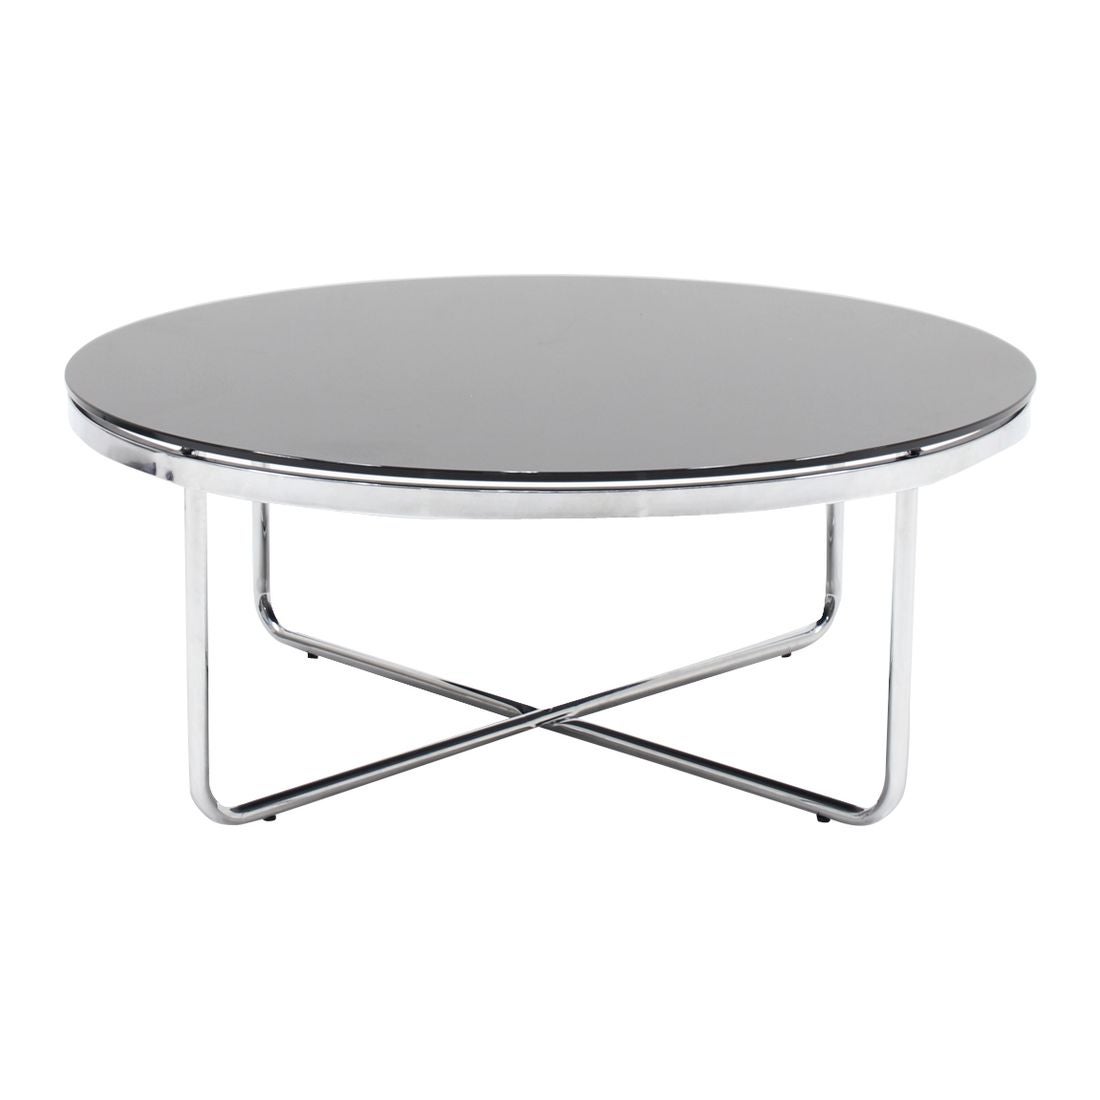 โต๊ะกลาง โต๊ะกลางเหล็กท๊อปกระจก รุ่น Laccate สีสีเงิน-SB Design Square